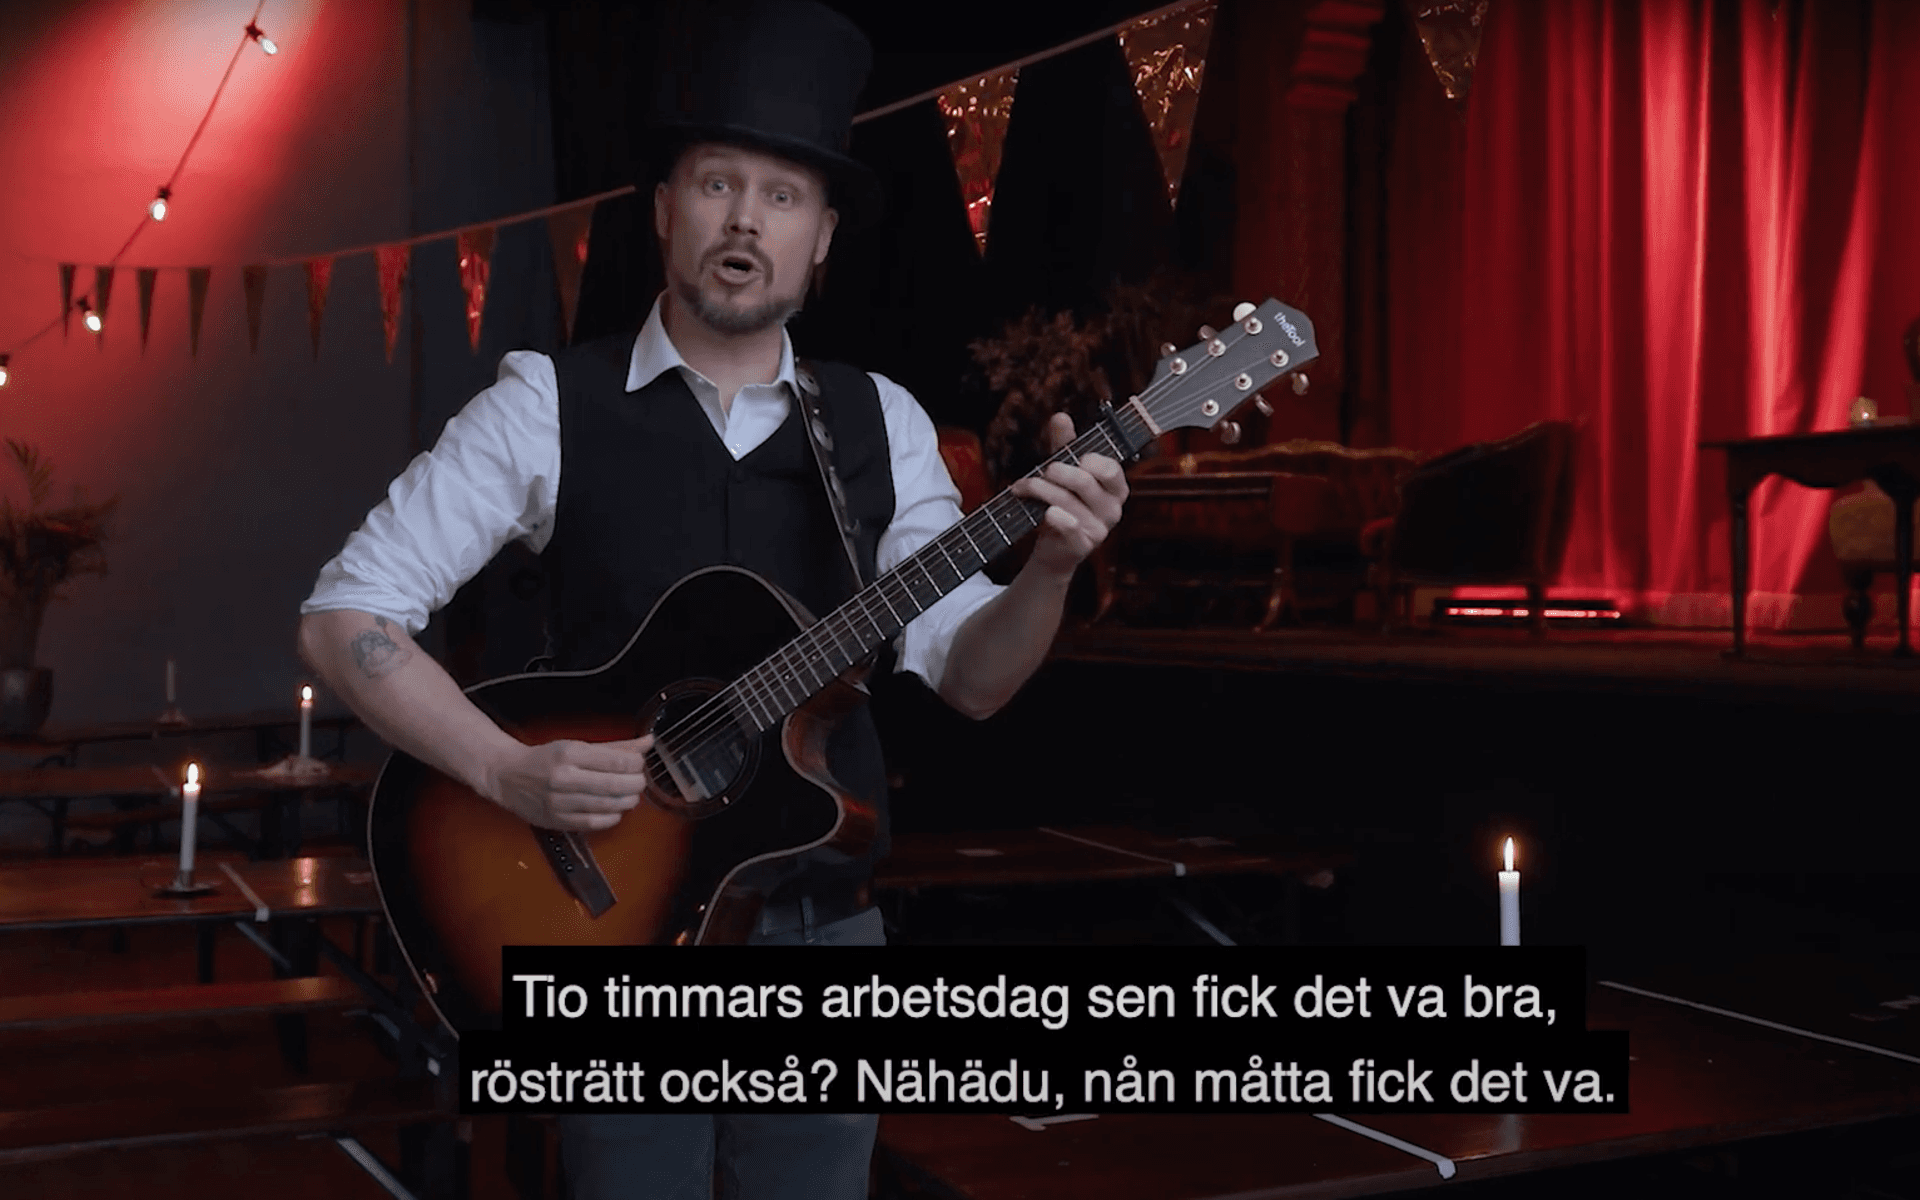 Kristian von Svensson, uppvuxen på Vallås, tilldelades priset under Socialdemokraternas digitala första maj-firande i Malmö. I sändningen spelade han även en låt. Se den i klippet nedan i texten.